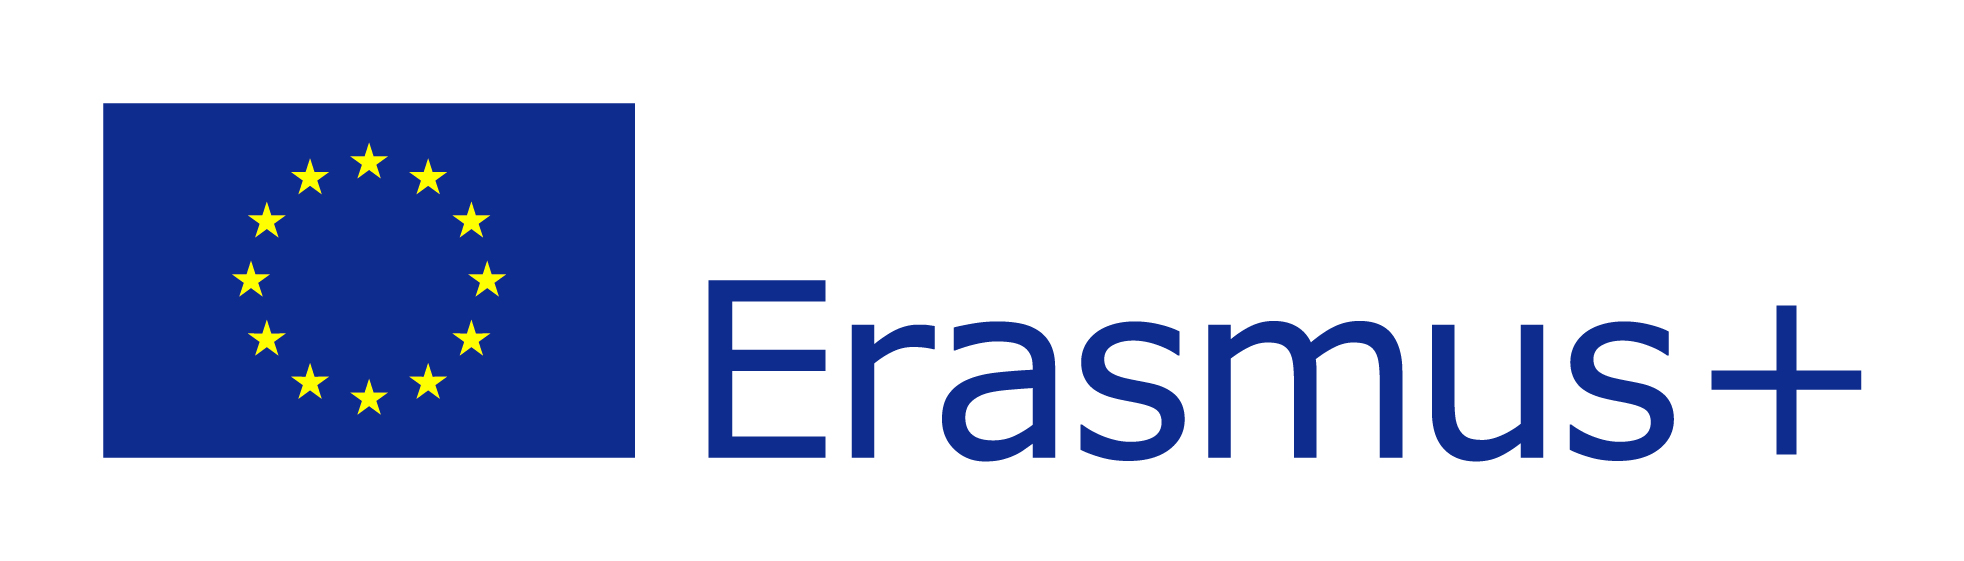 Erasmus+ u Hrvatskoj 2018. godine - Slika 1